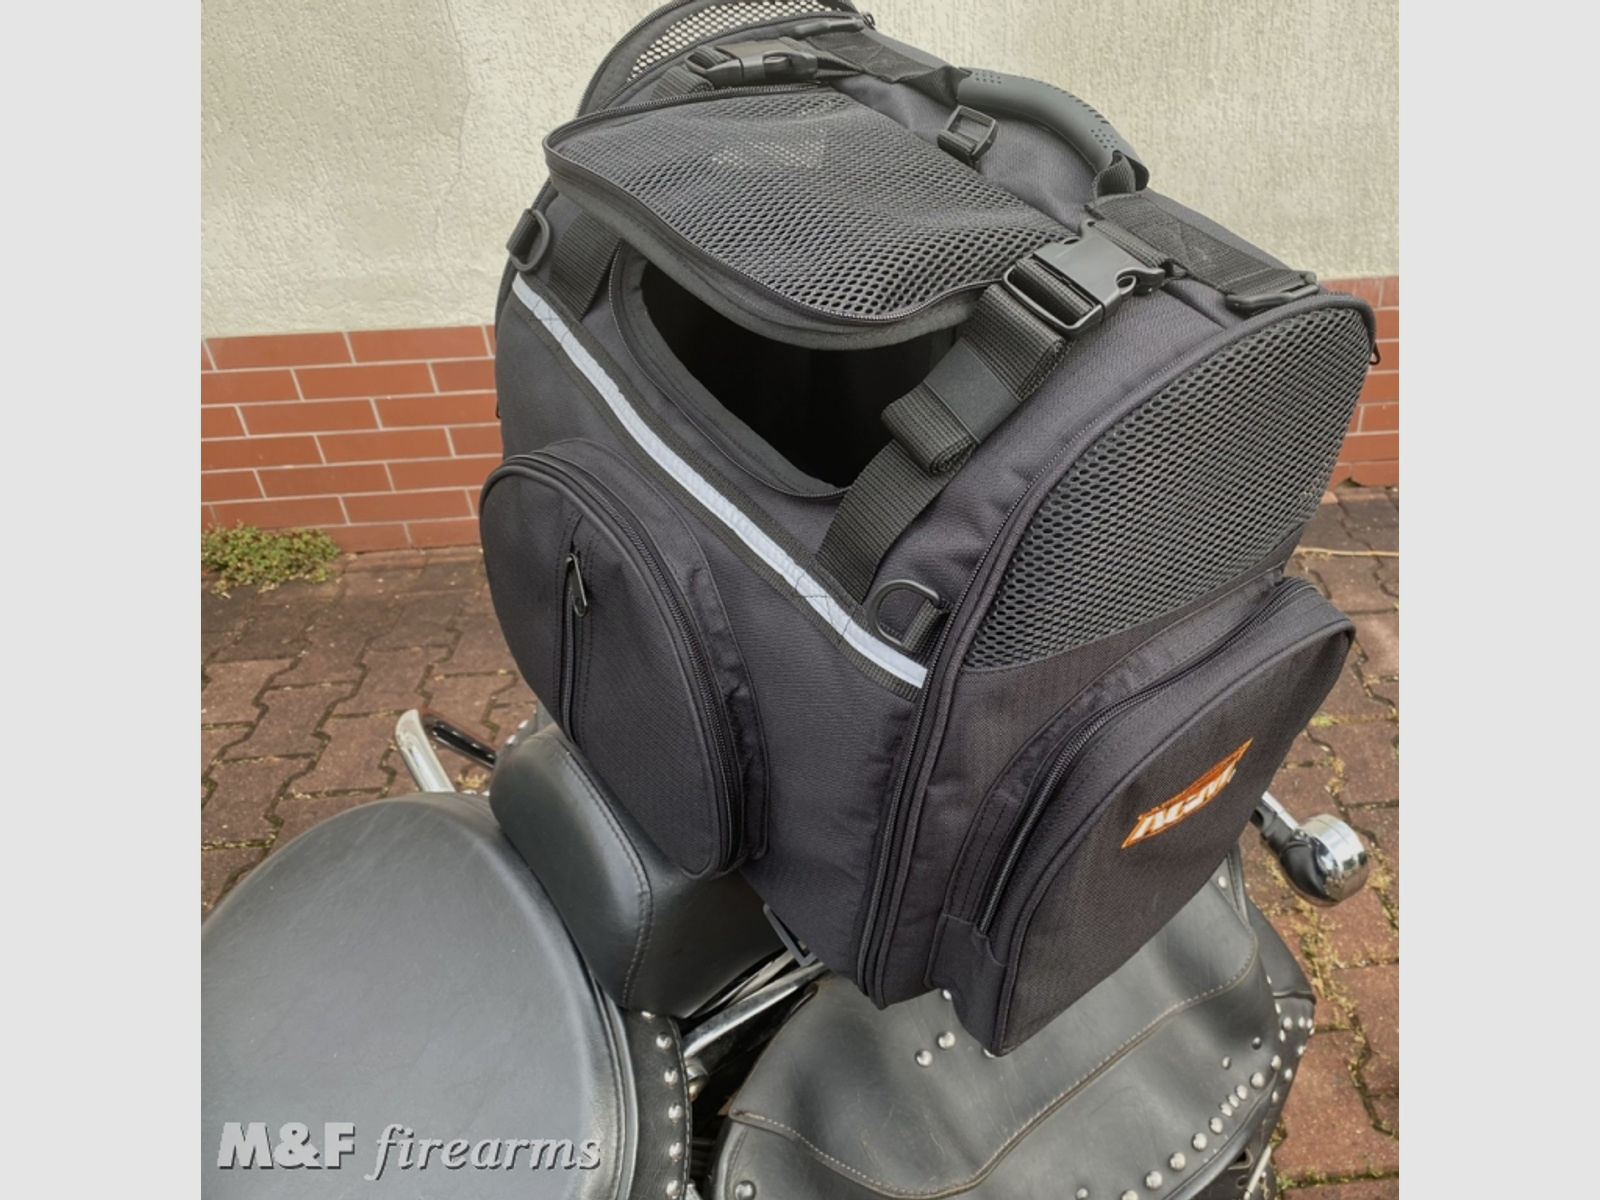 AGM Motorcycle Bag (Motorradtasche) Pet Bag für Deinen Hund auf dem Bike